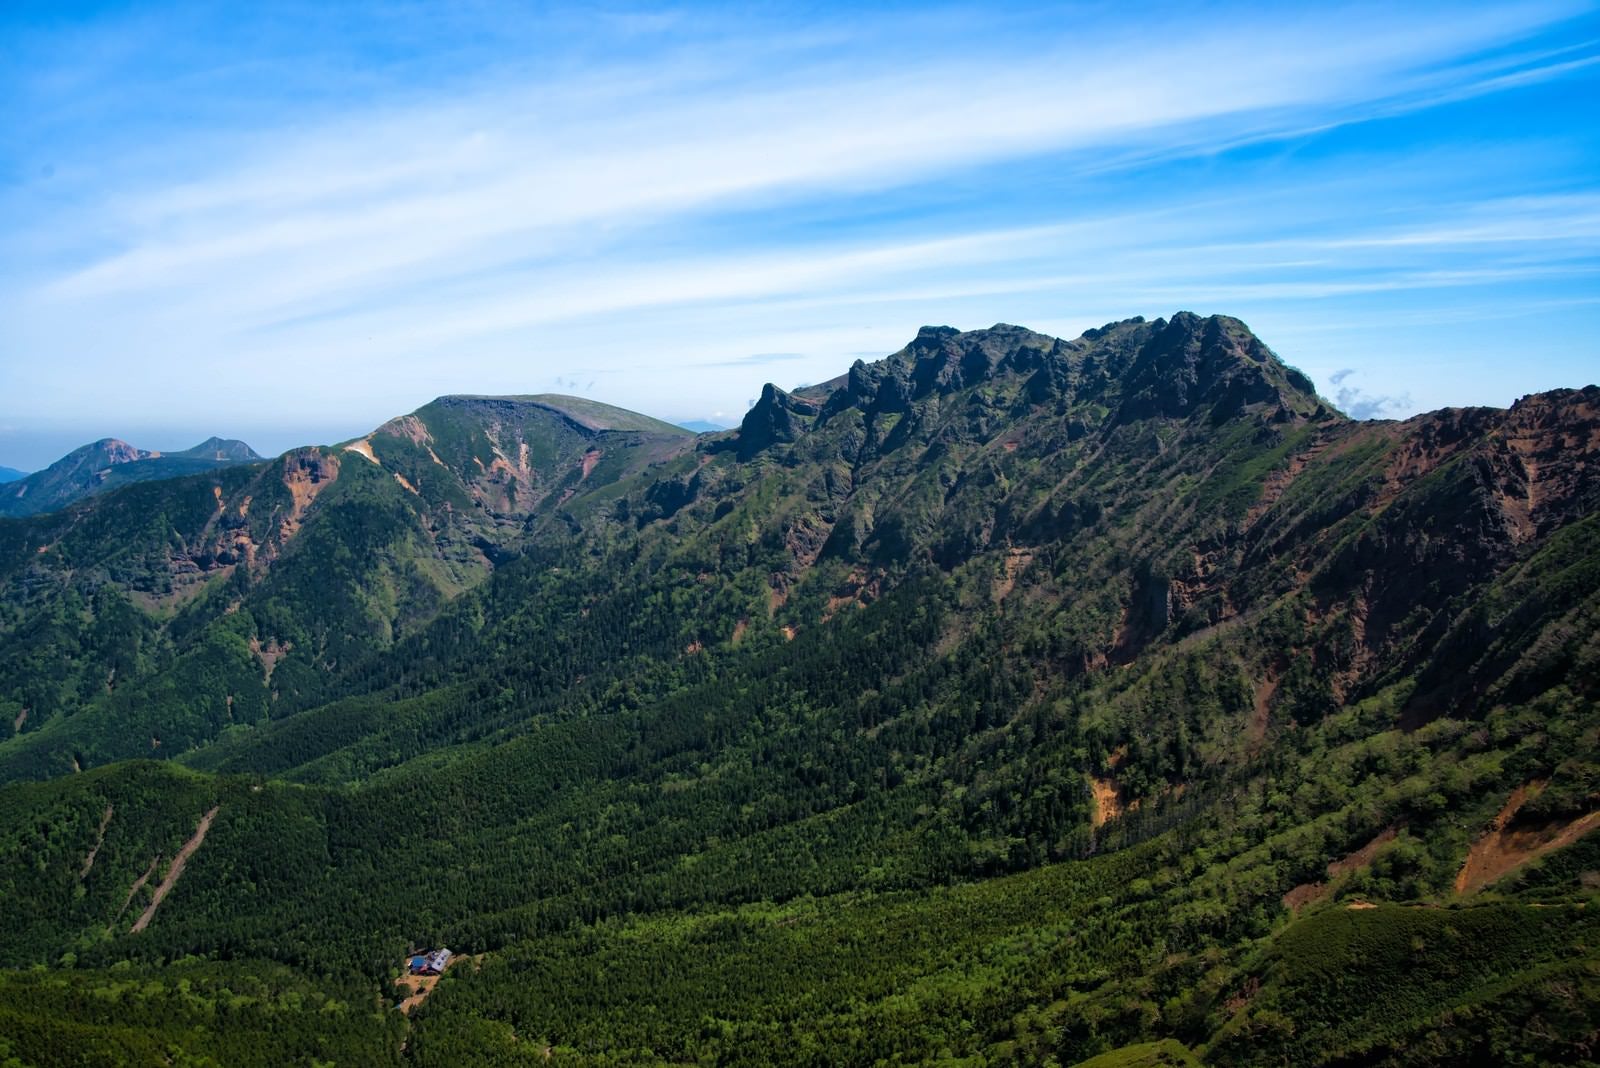 「阿弥陀山頂から望む眺望」の写真